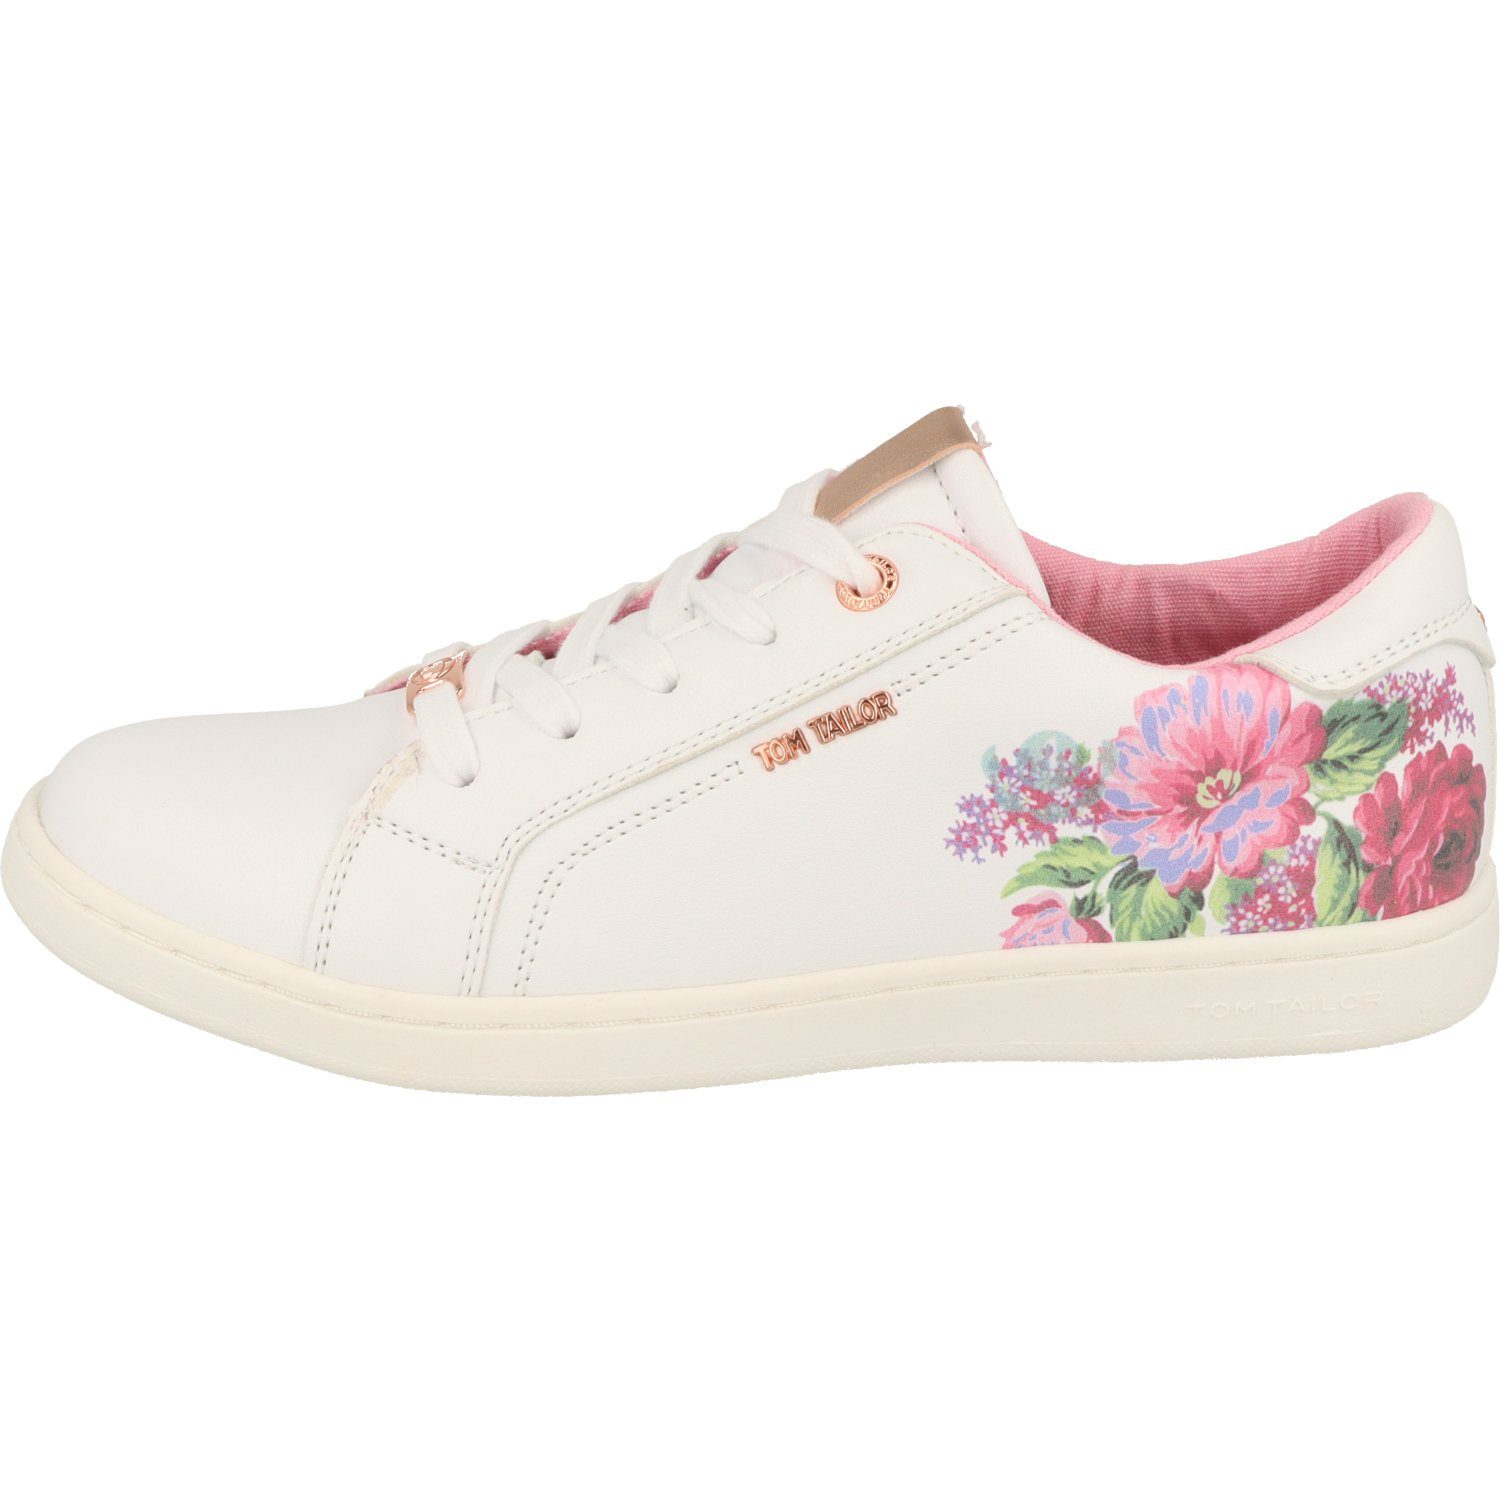 Schuhe Mädchen Flower Schnürschuh Halbschuhe White TAILOR TOM Sneaker 5372704